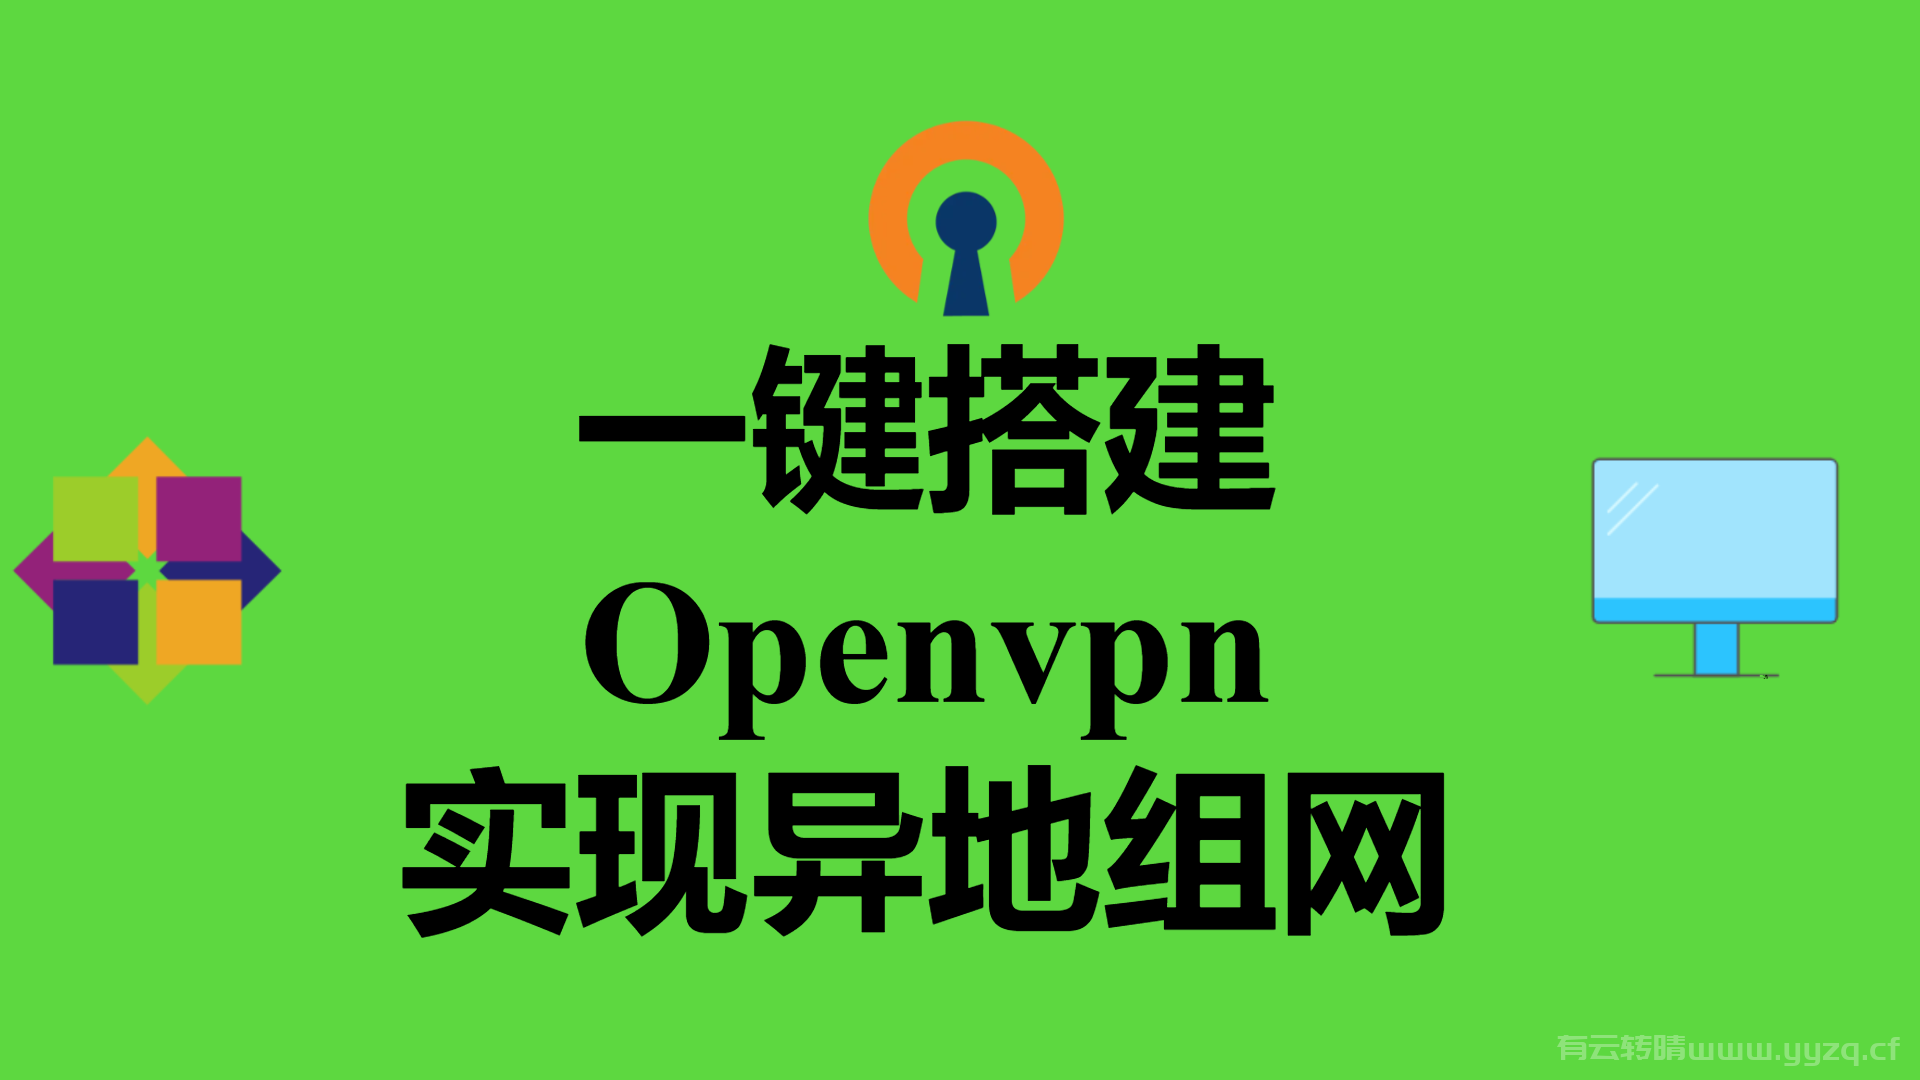 一键搭建openvpn服务，实现异地组网，异地办公。